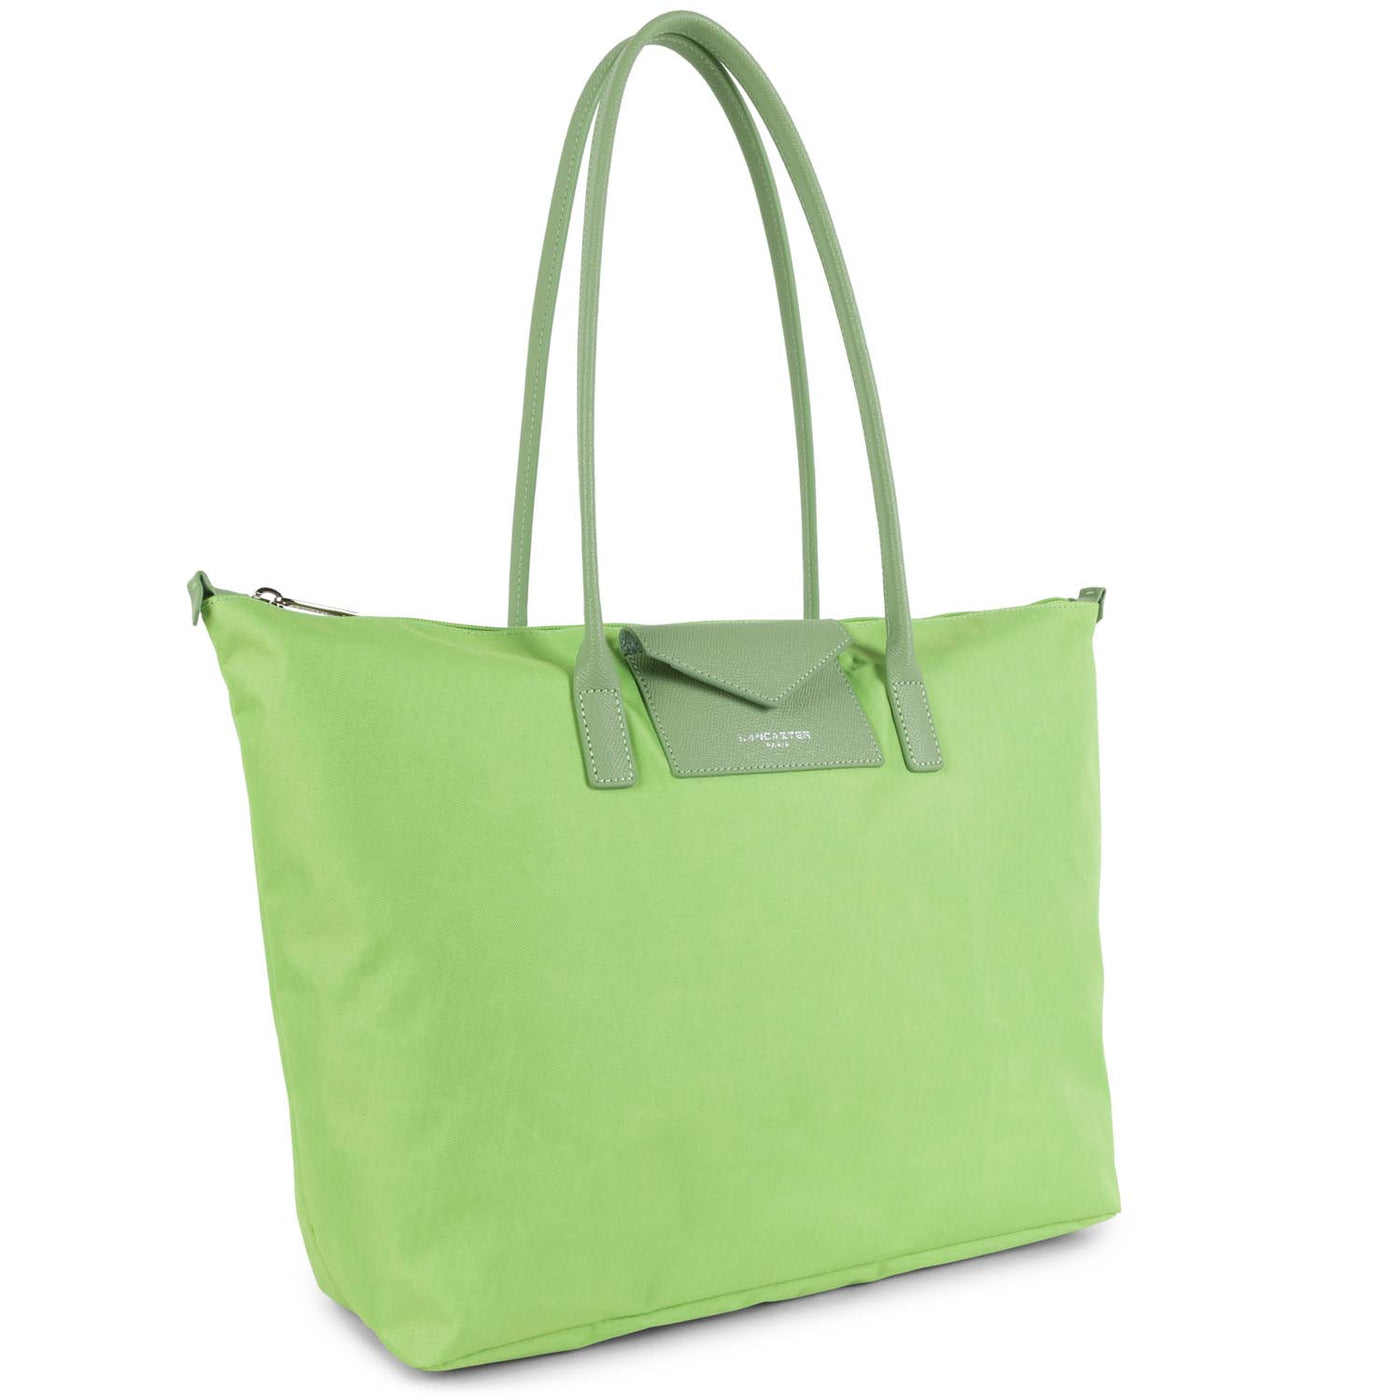 grand sac cabas épaule - smart kba #couleur_jade